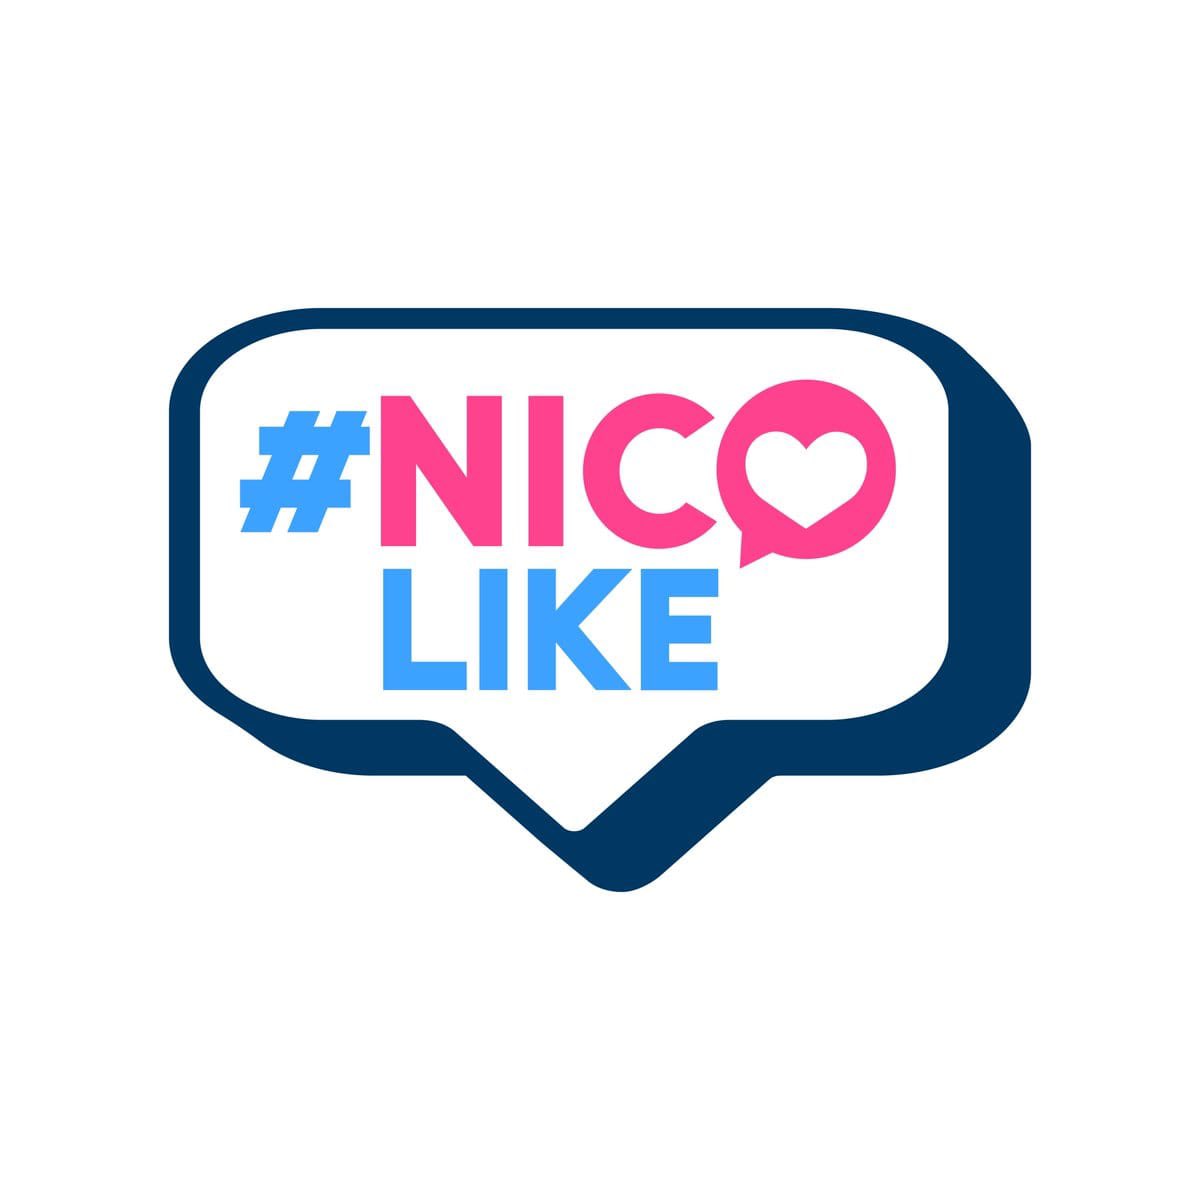 ¡Vamos a romper el algoritmo!

📢 Pasos para derrotar la censura 🔥

1️⃣ Sigue las cuentas del Pdte. @NicolasMaduro 
2️⃣Comenta este post con la Etiqueta #NicoLike
3️⃣Dale un ❤️ y 🔃 a este post

¡Pueblo activo revolucionando en las redes! #YoSoyDeAqui